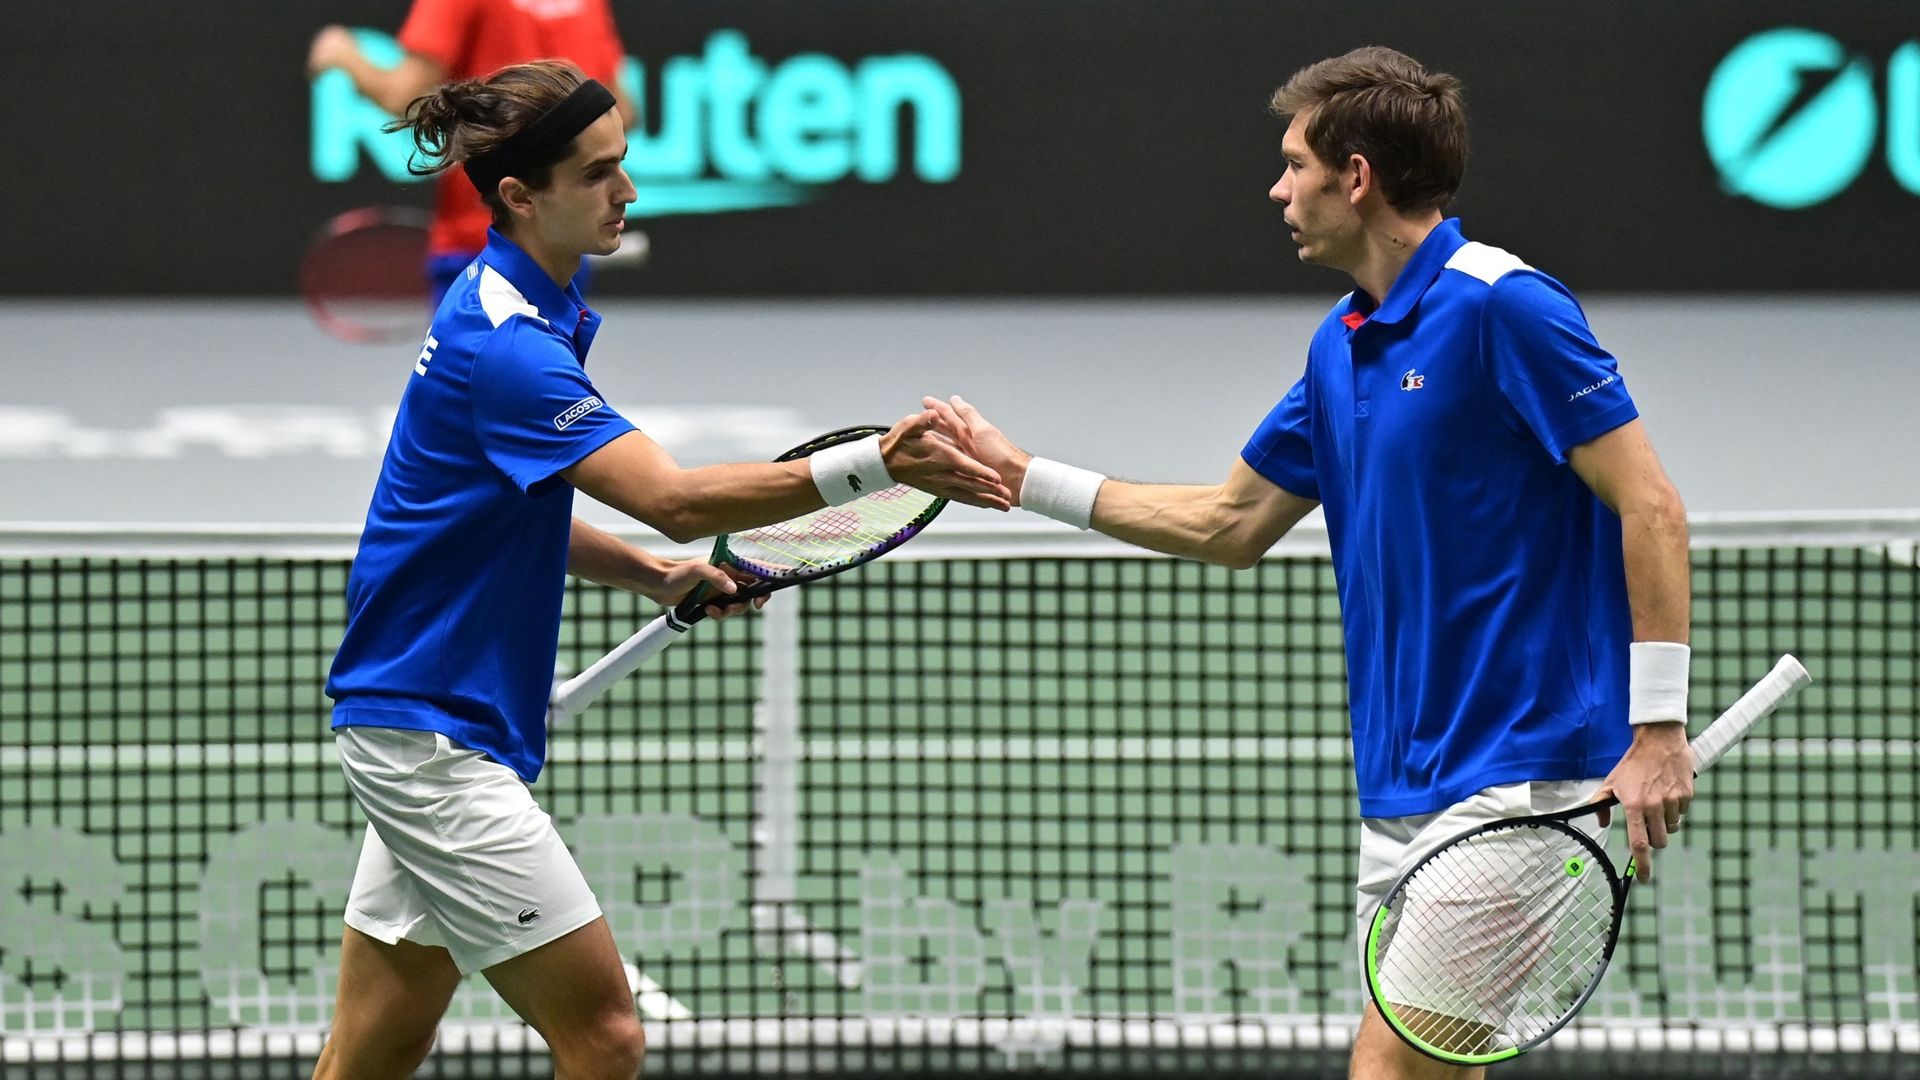 Nicolas Mahut et Pierre-Hugues Herbert s'encouragent après un point. La France a battu la République tchèque lors de son premier match de Coupe Davis. 